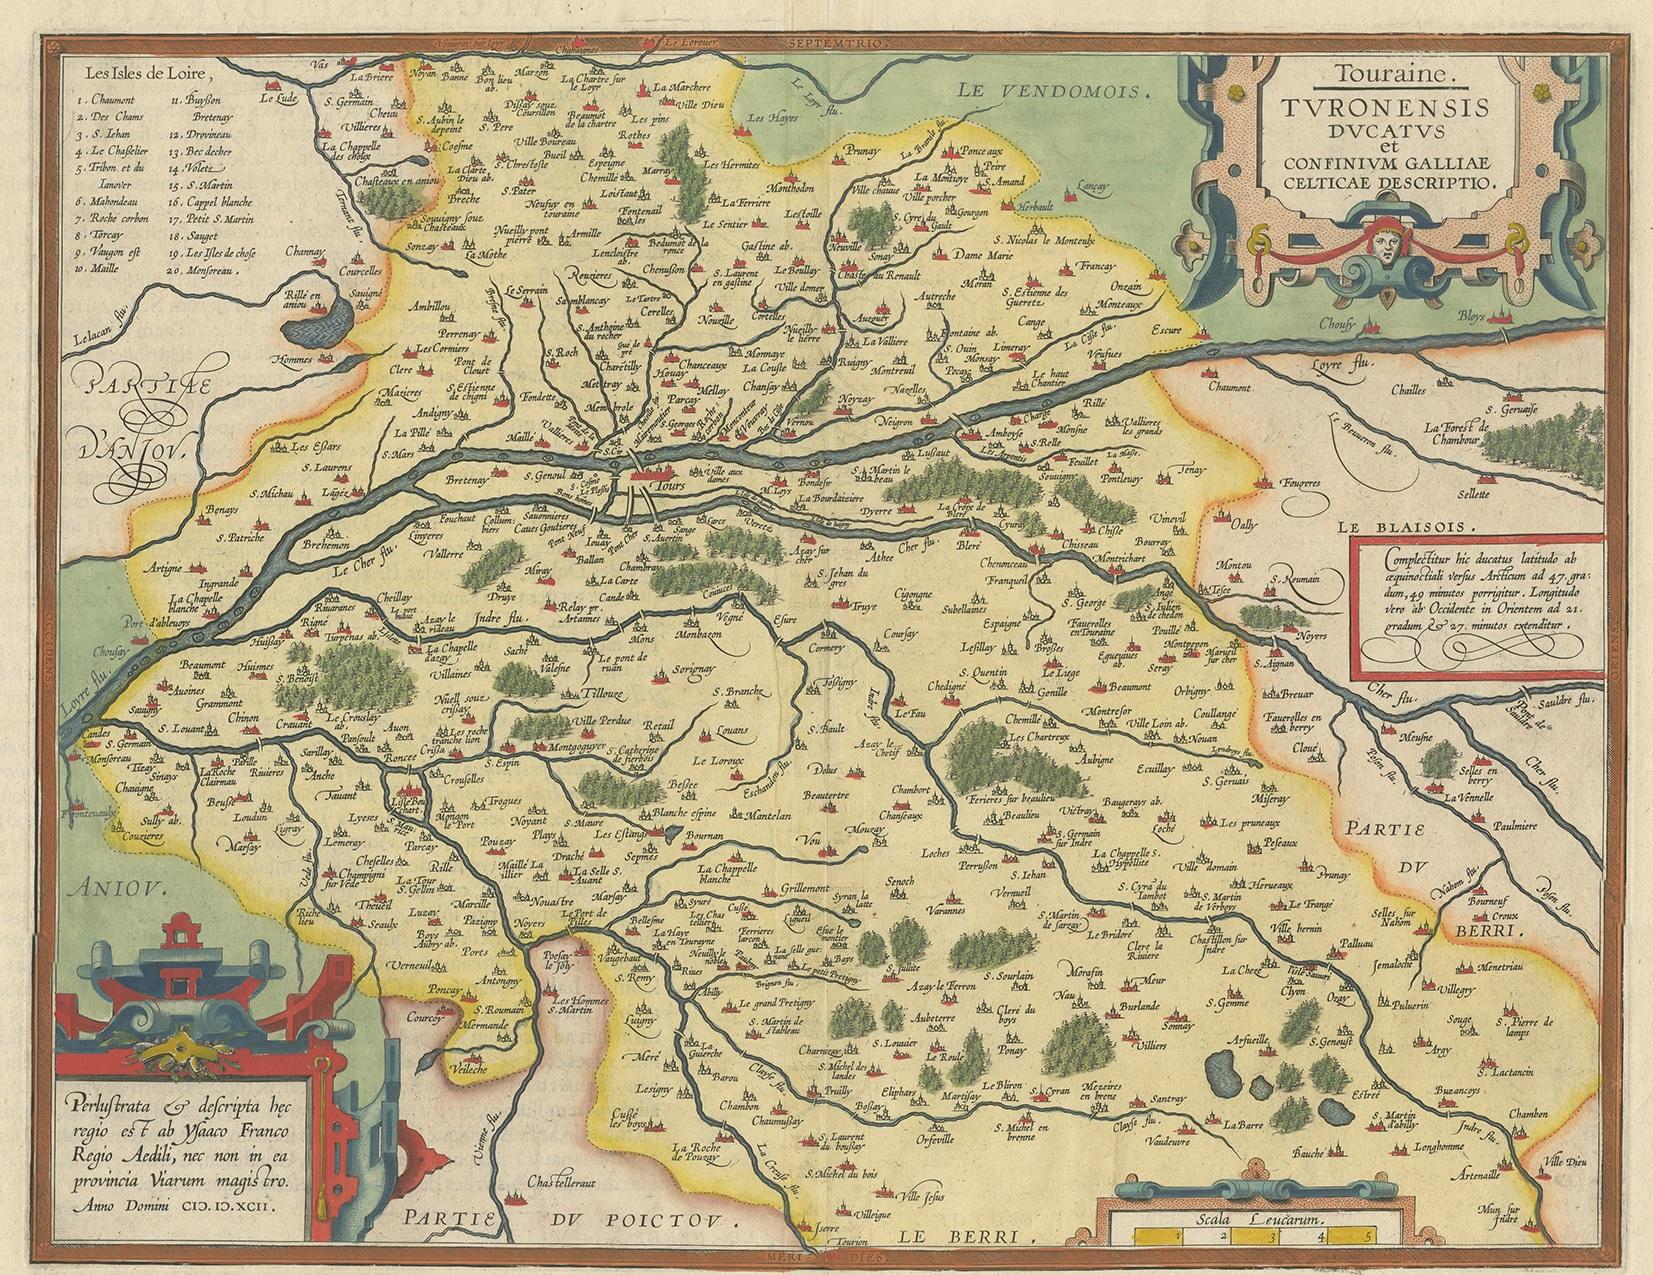 Antique map titled 'Touraine. Turonensis Ducatus et Confinium Galliae Celticae Descriptio'. Original antique map of the Region of Touraine, France. Published by A. Ortelius, circa 1600.